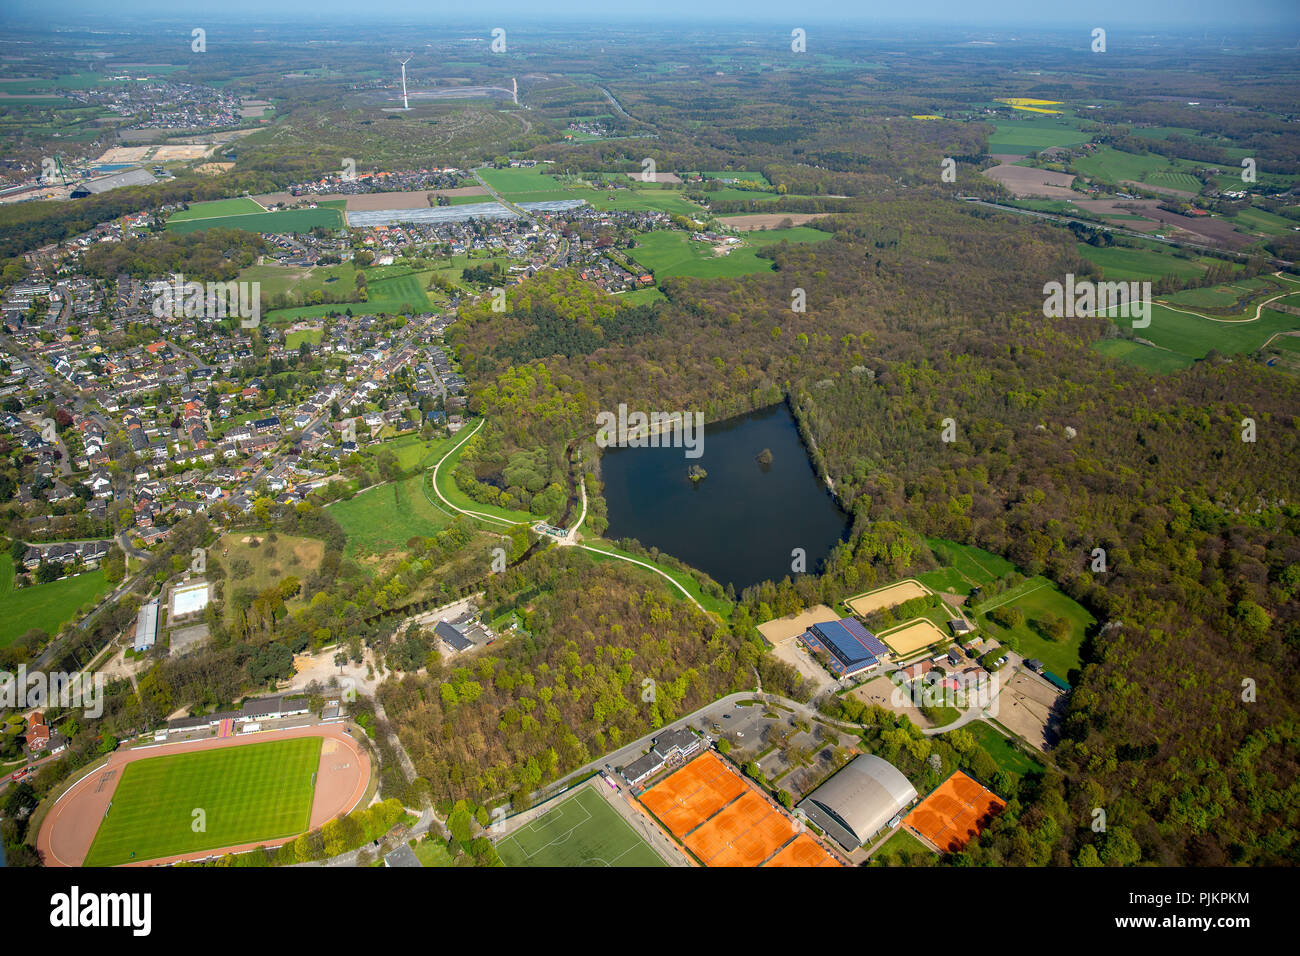 Rotbachsee Weir de Dinslaken, Lippeverband, la conservation de la nature, la gestion de l'eau, Dinslaken, Ruhr, Rhénanie du Nord-Westphalie, Allemagne Banque D'Images